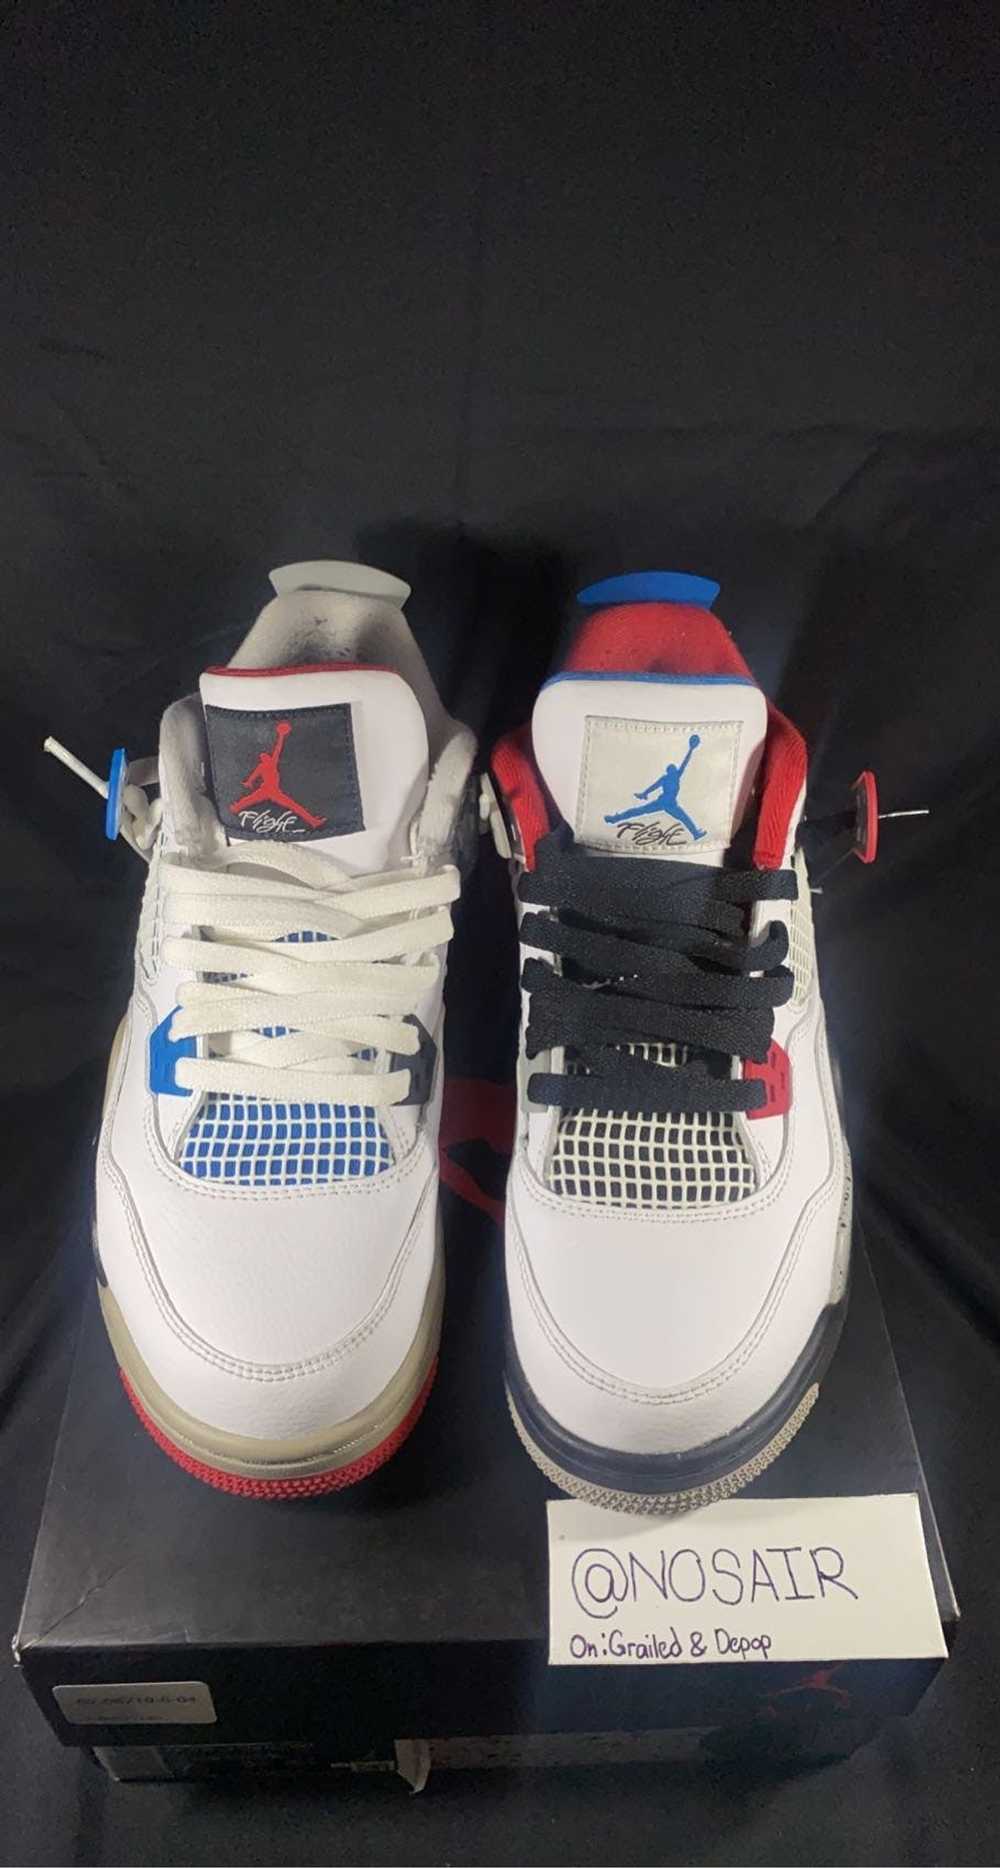 Jordan Brand × Nike 2019 Jordan 4 What The - image 1